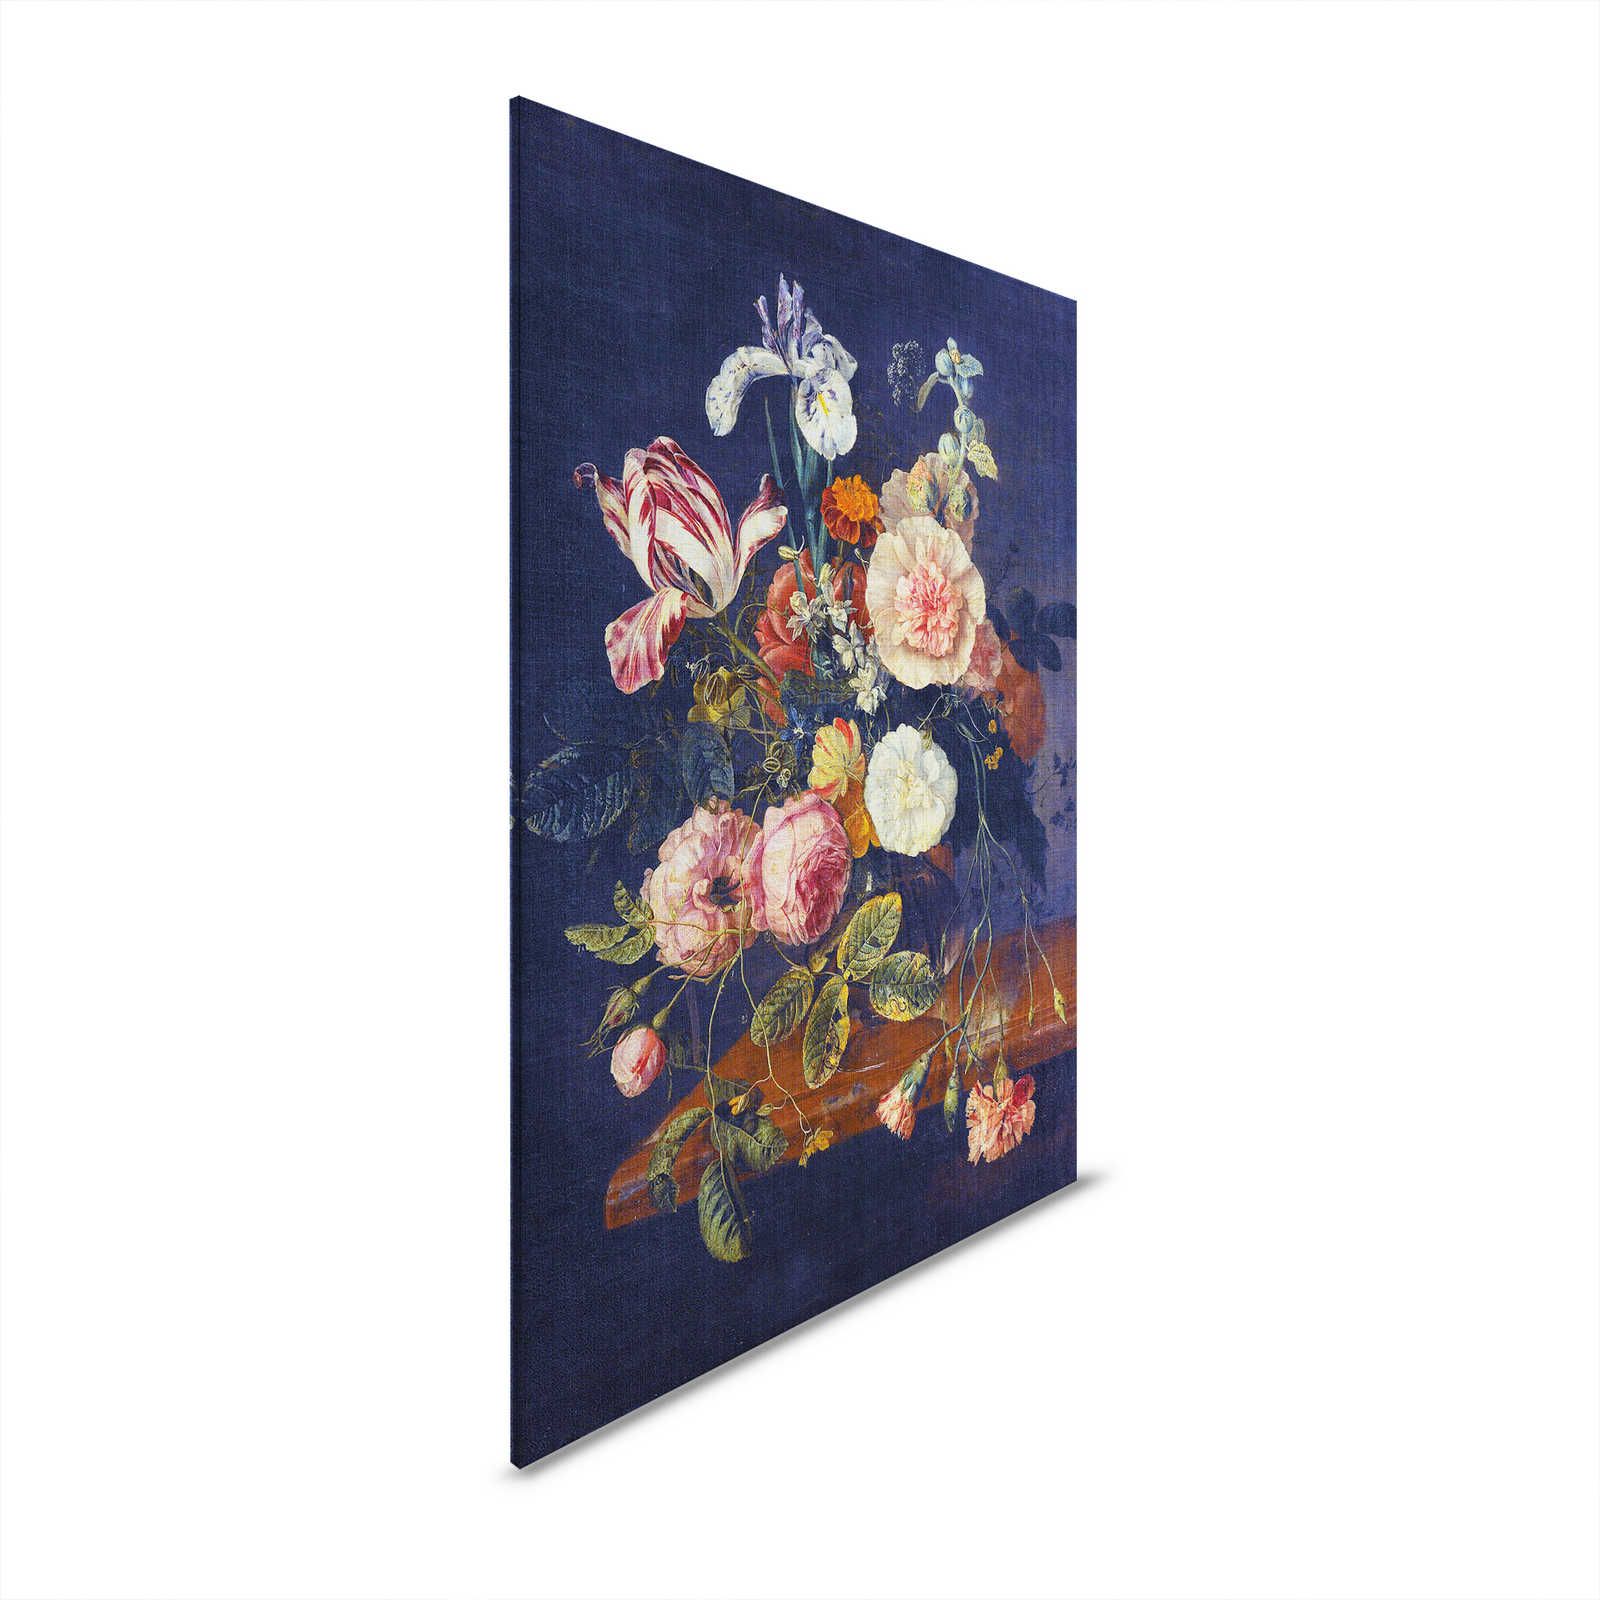 Artistas Estudio 1 - Cuadro Flores Naturaleza Muerta Azul Oscuro - 0,80 m x 1,20 m
